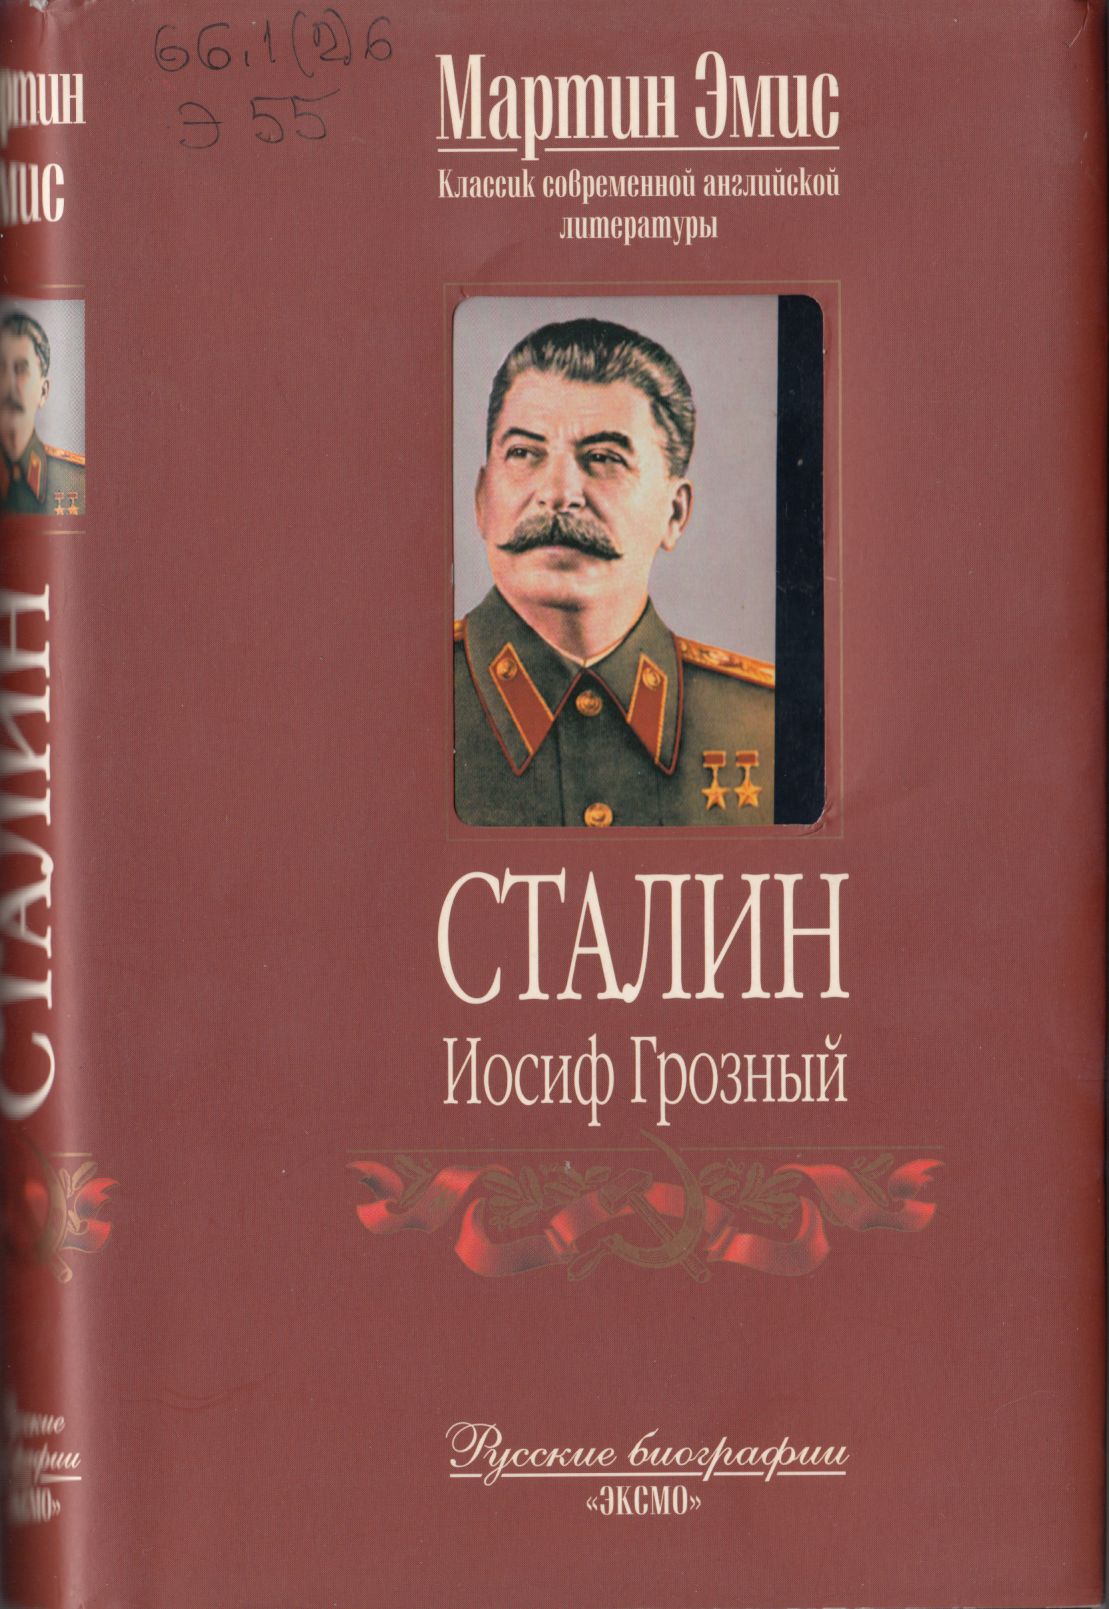 Сталинские книги купить. Сталин книга. Книга про Сталина. Сталин Иосиф Виссарионович книги. Книга Сталин биография вождя.